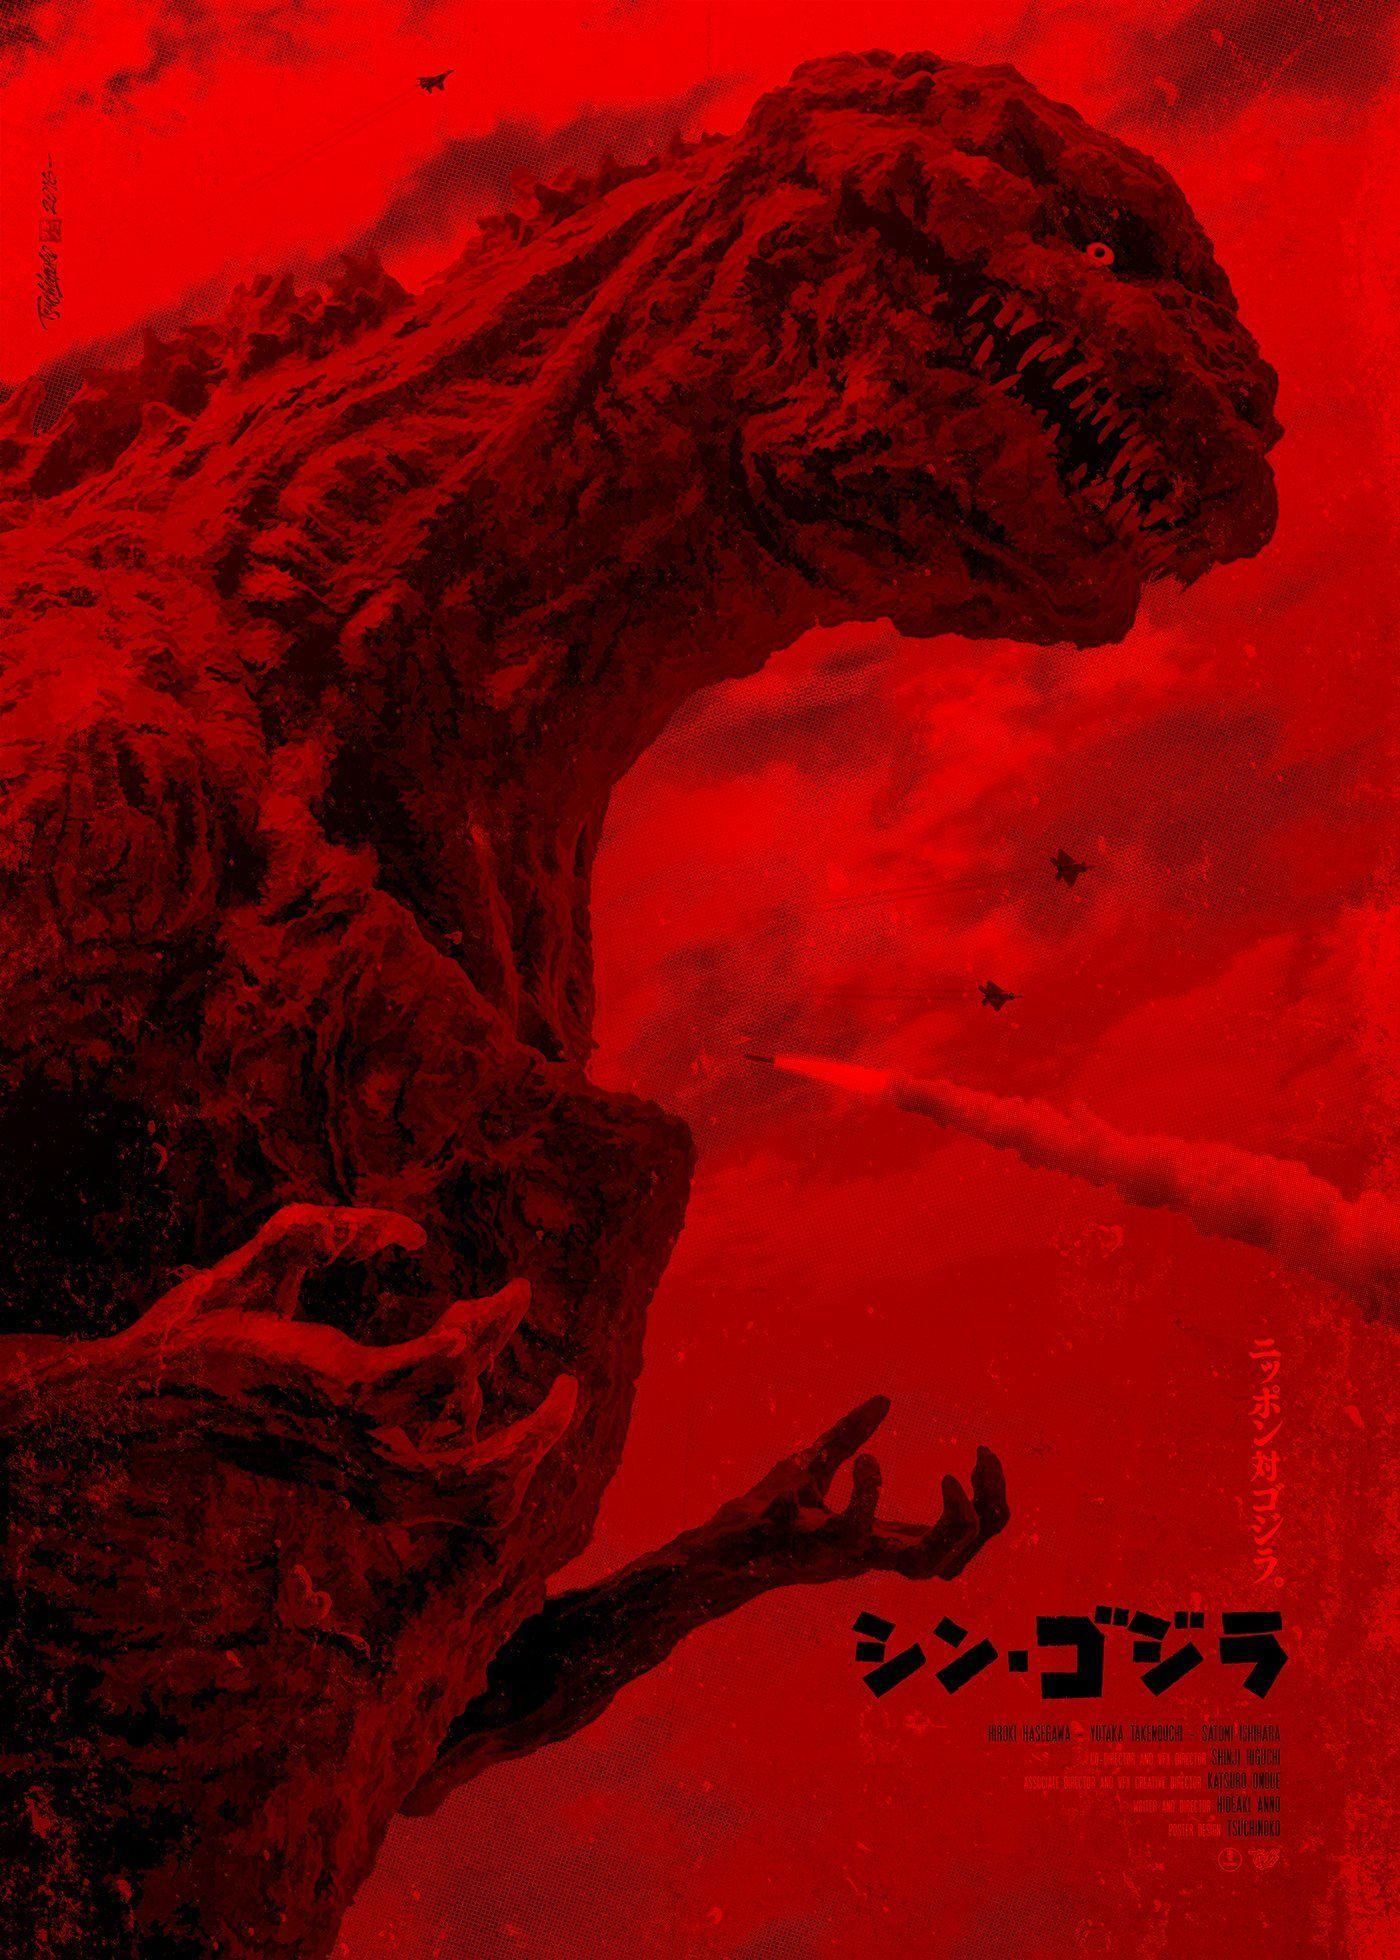 Godzilla Phone Wallpaper Free Godzilla Phone